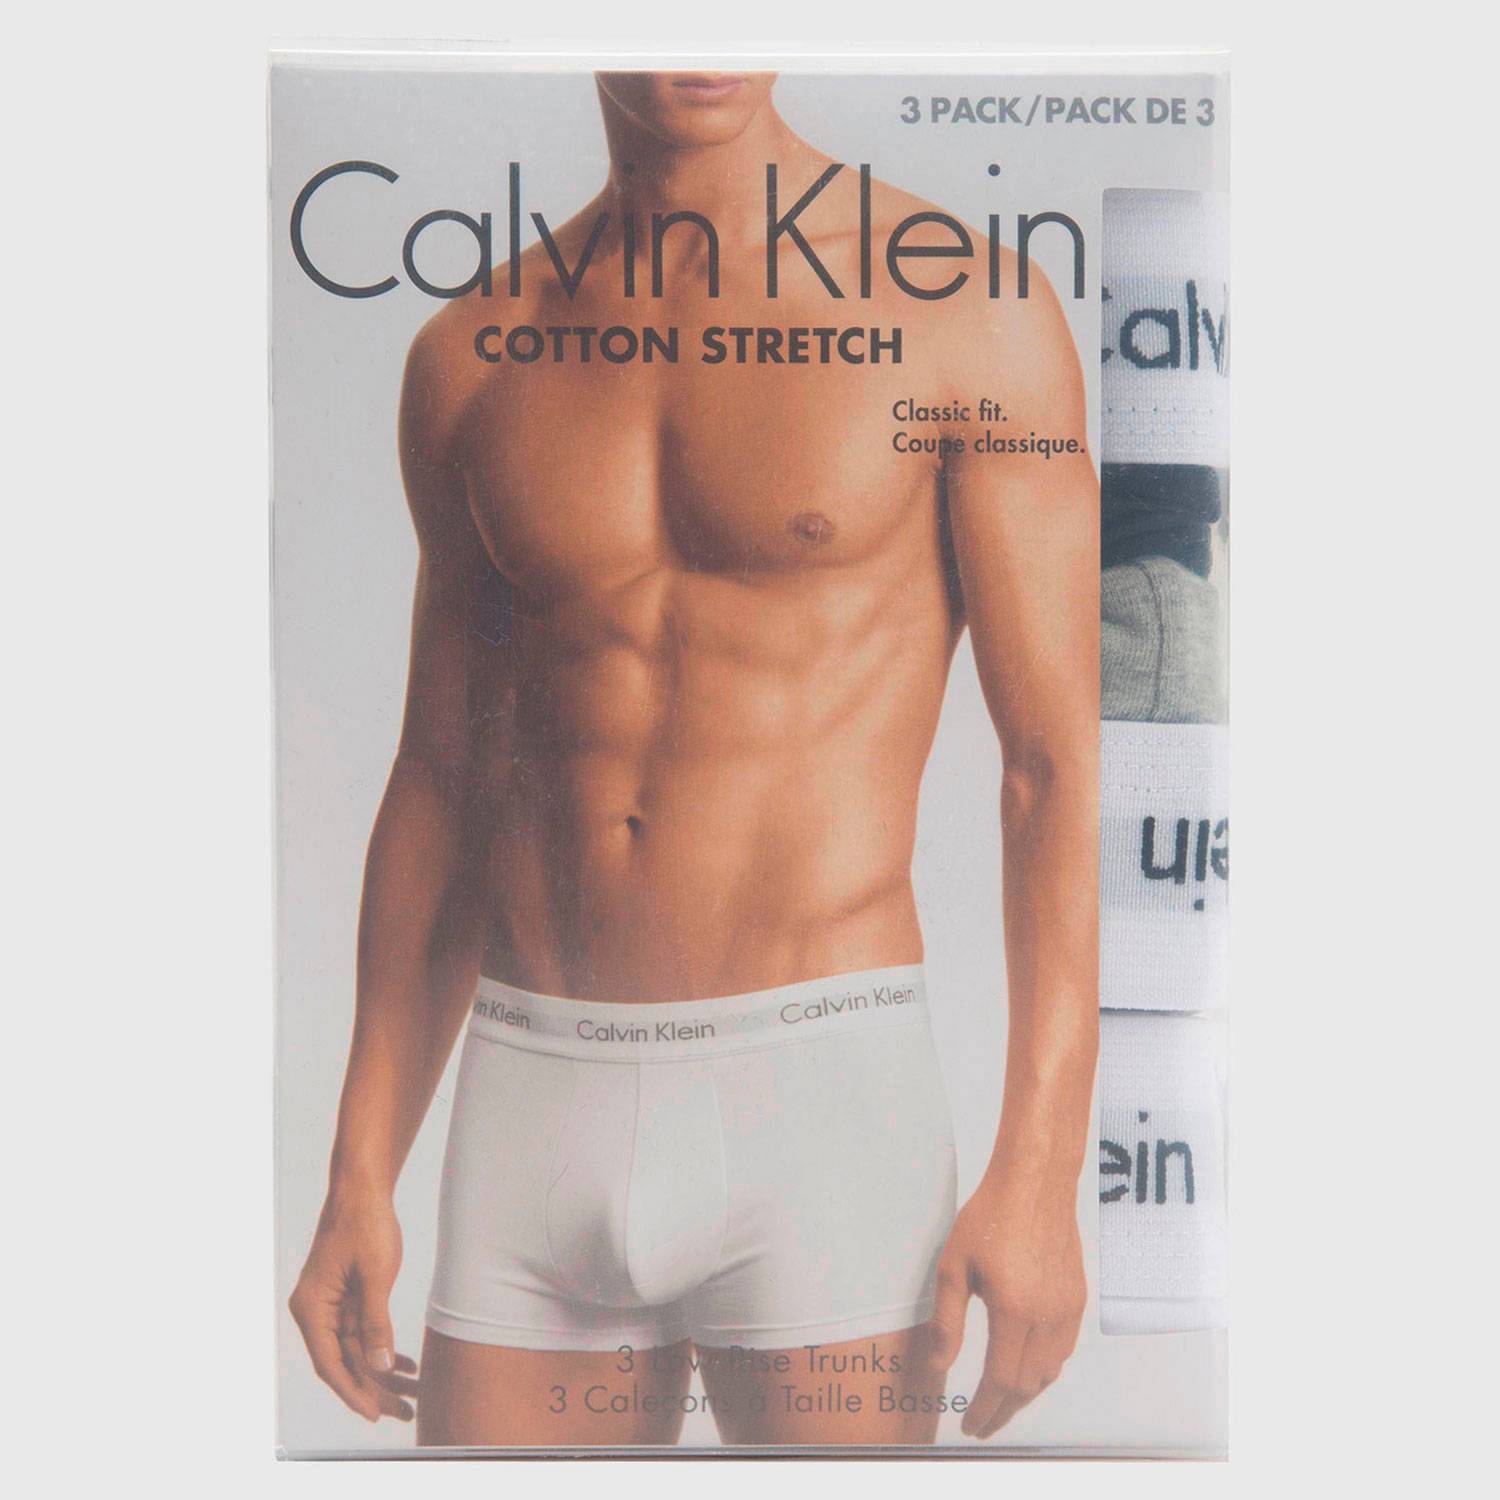 CALVIN KLEIN Pack de 3 Boxers Algodón Hombre Calvin Klein